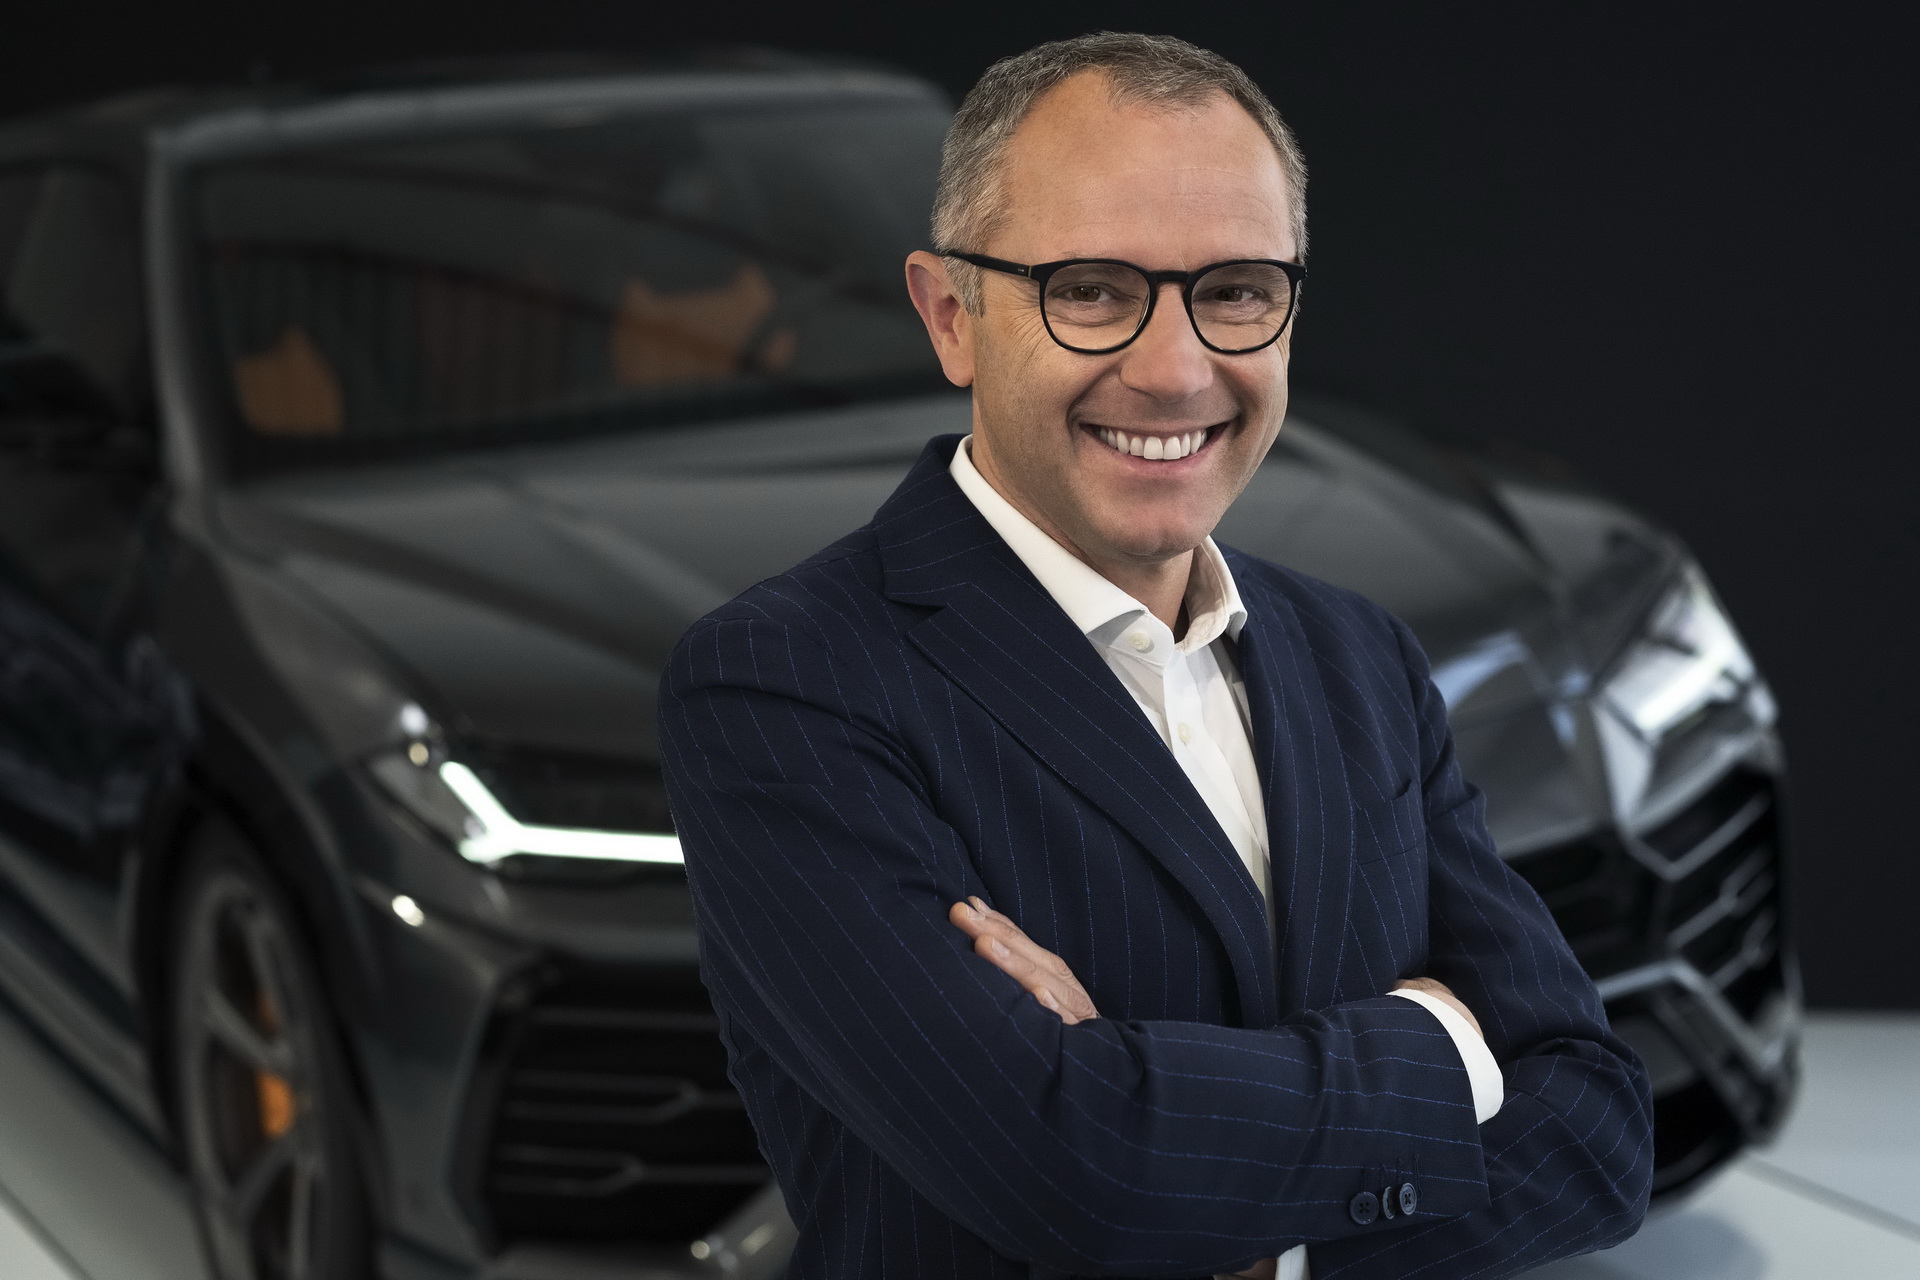 استقالة رئيس لامبورجيني وتعيينه رئيساً تنفيذياً للفورمولا 1